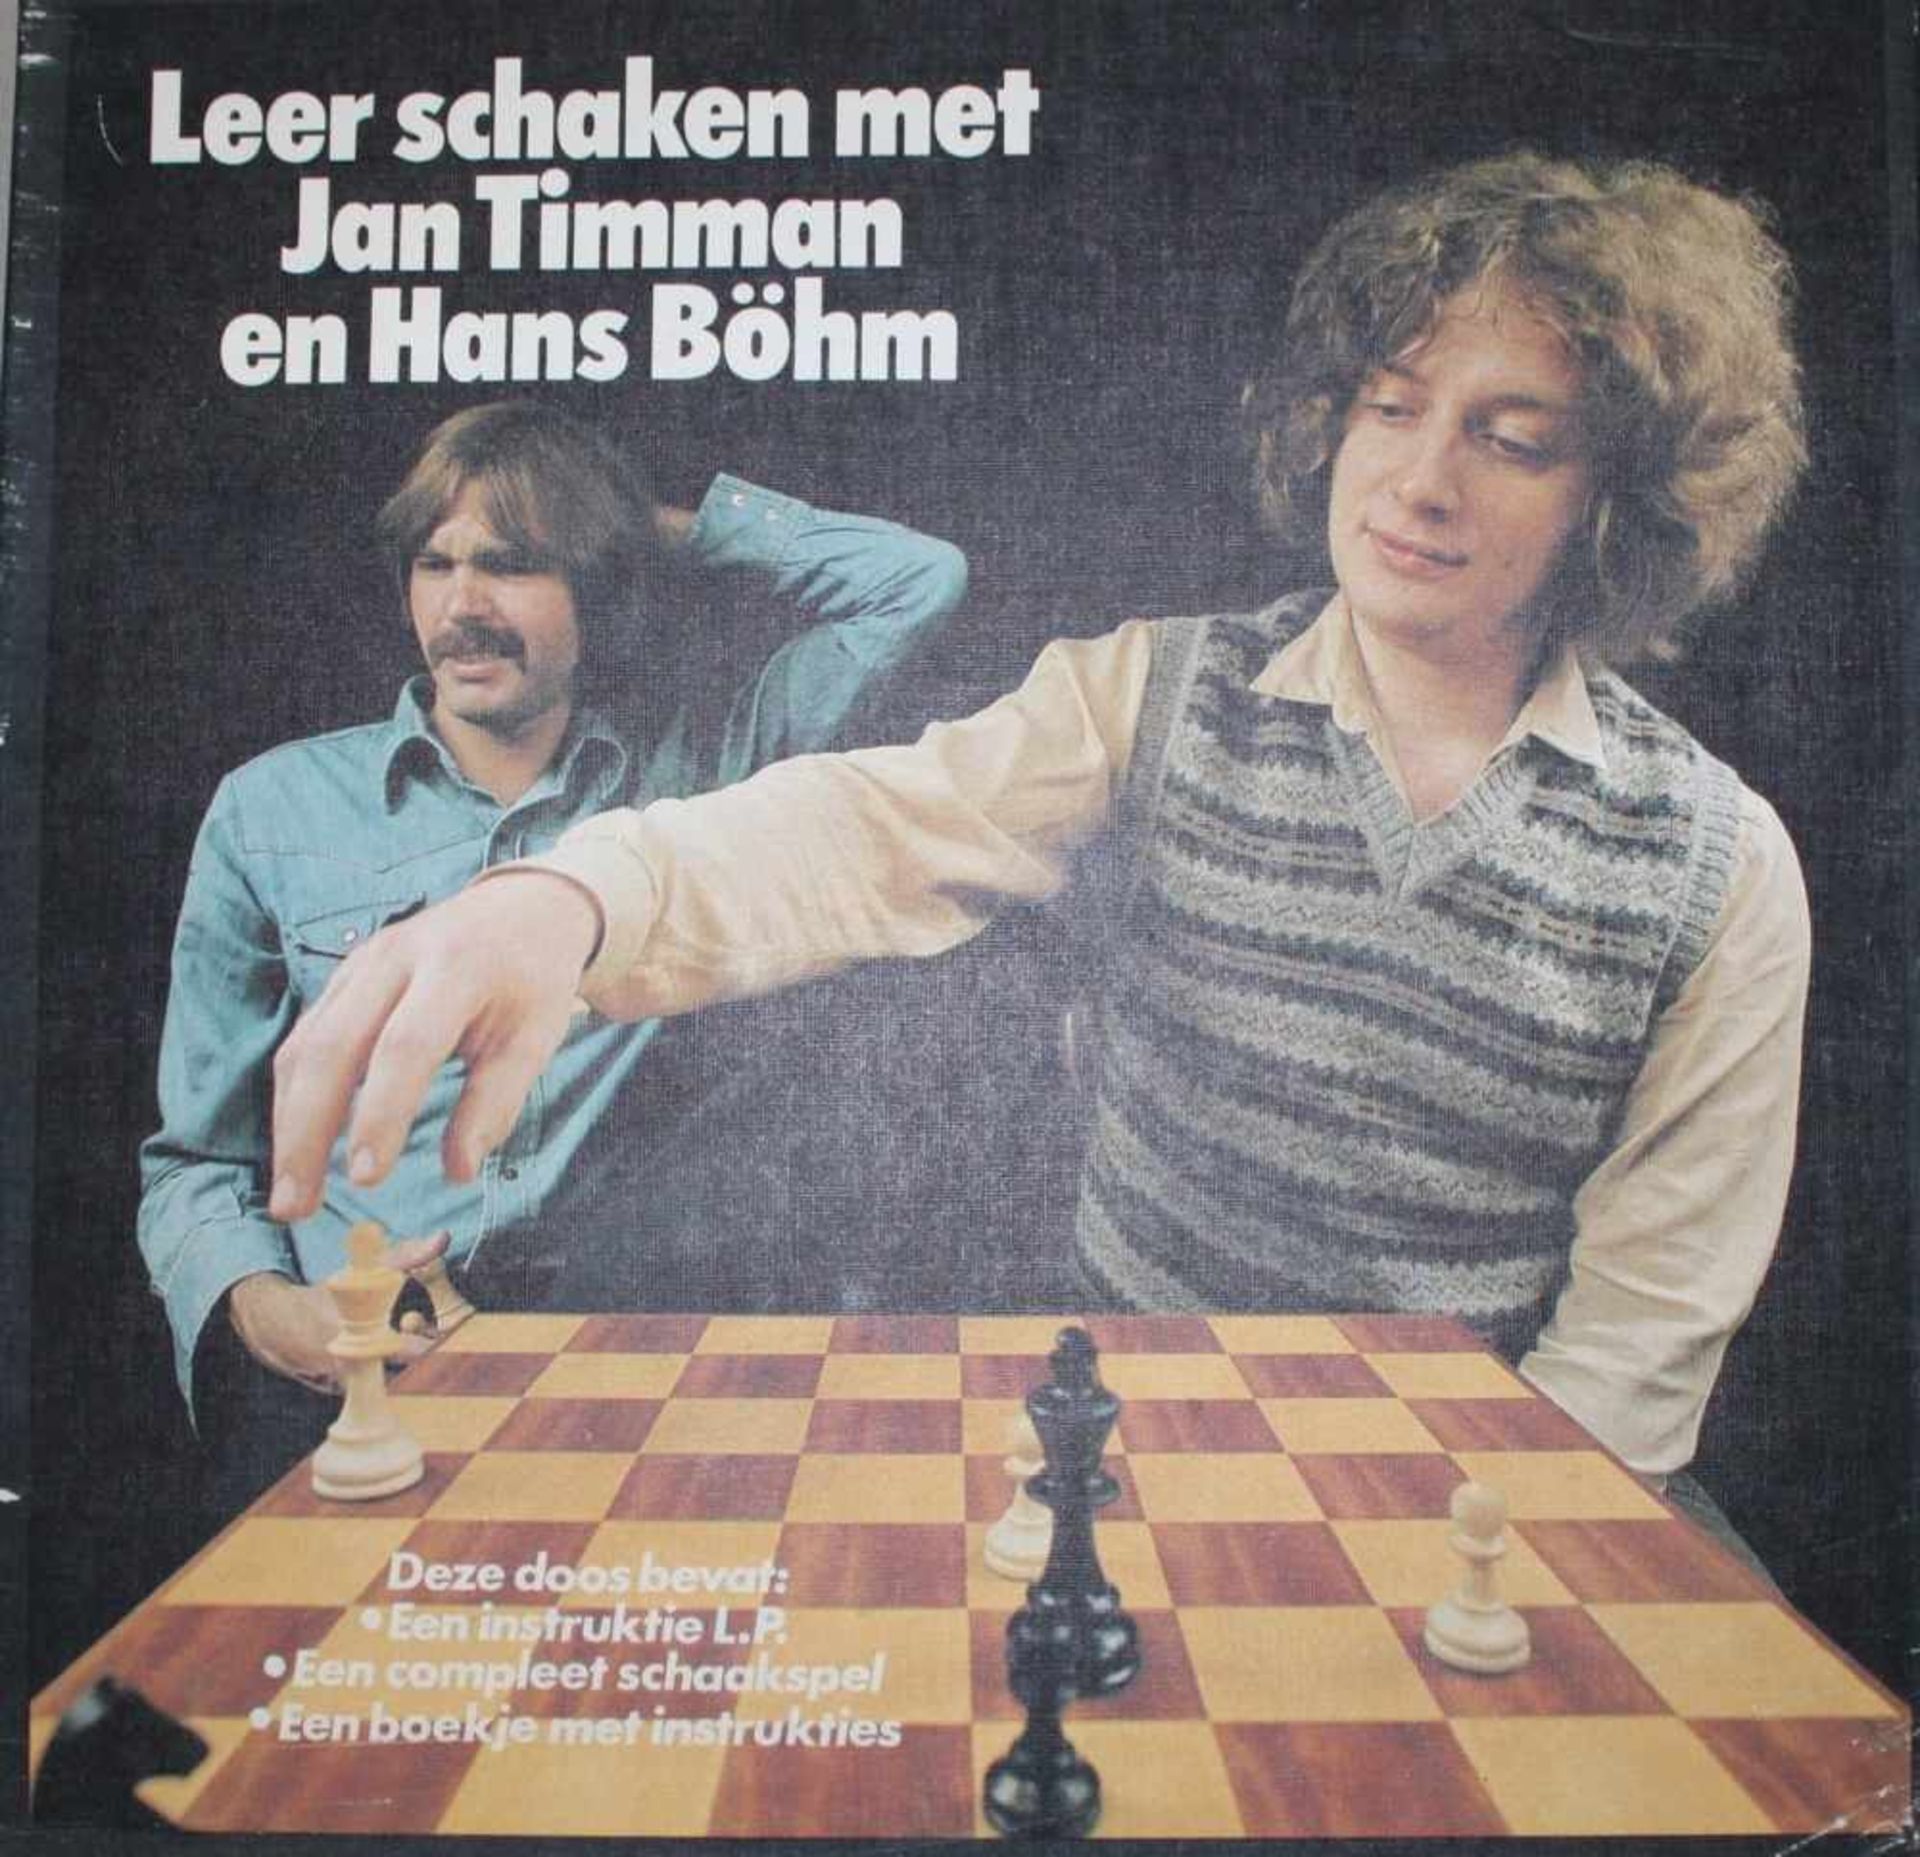 Schallplatte. Timman, Jan und Hans Böhm.Leer schaken met Jan Timman en Hans Böhm. Kassette mit einer